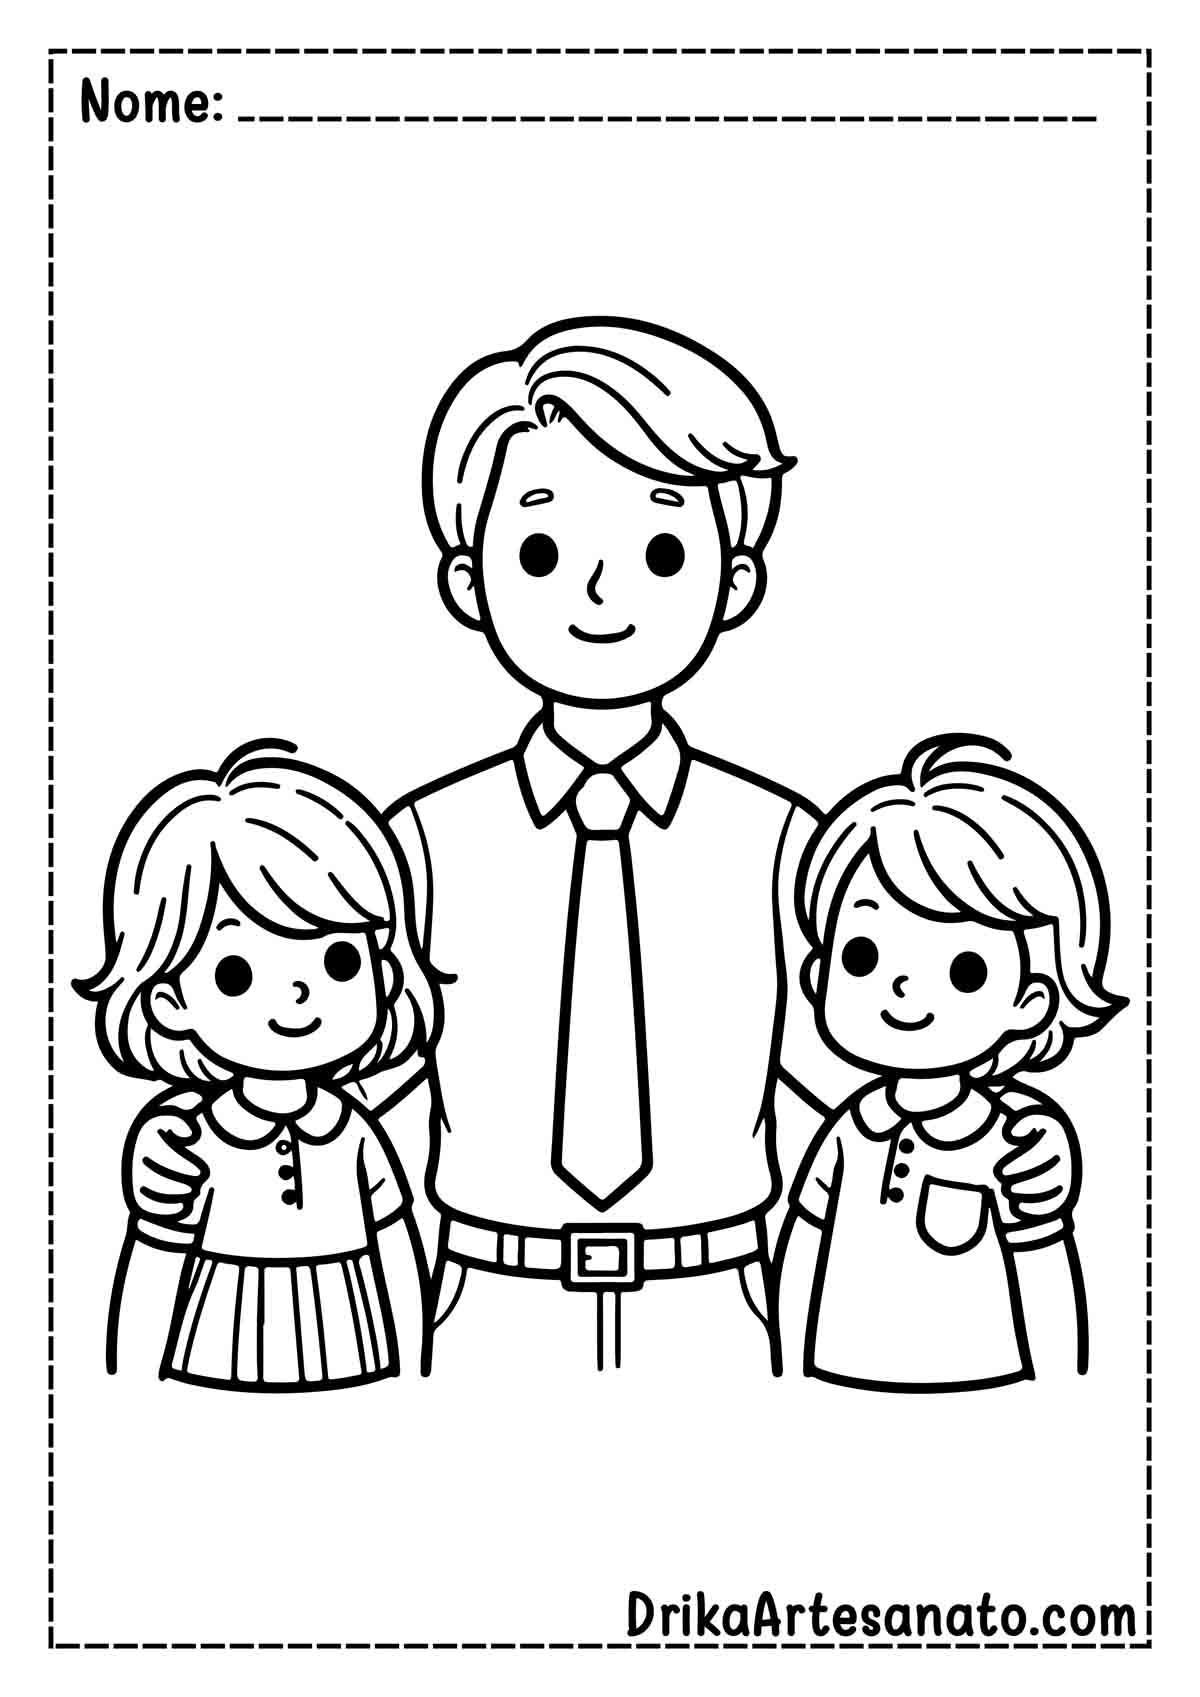 Desenho de Dia dos Pais Fácil para Imprimir